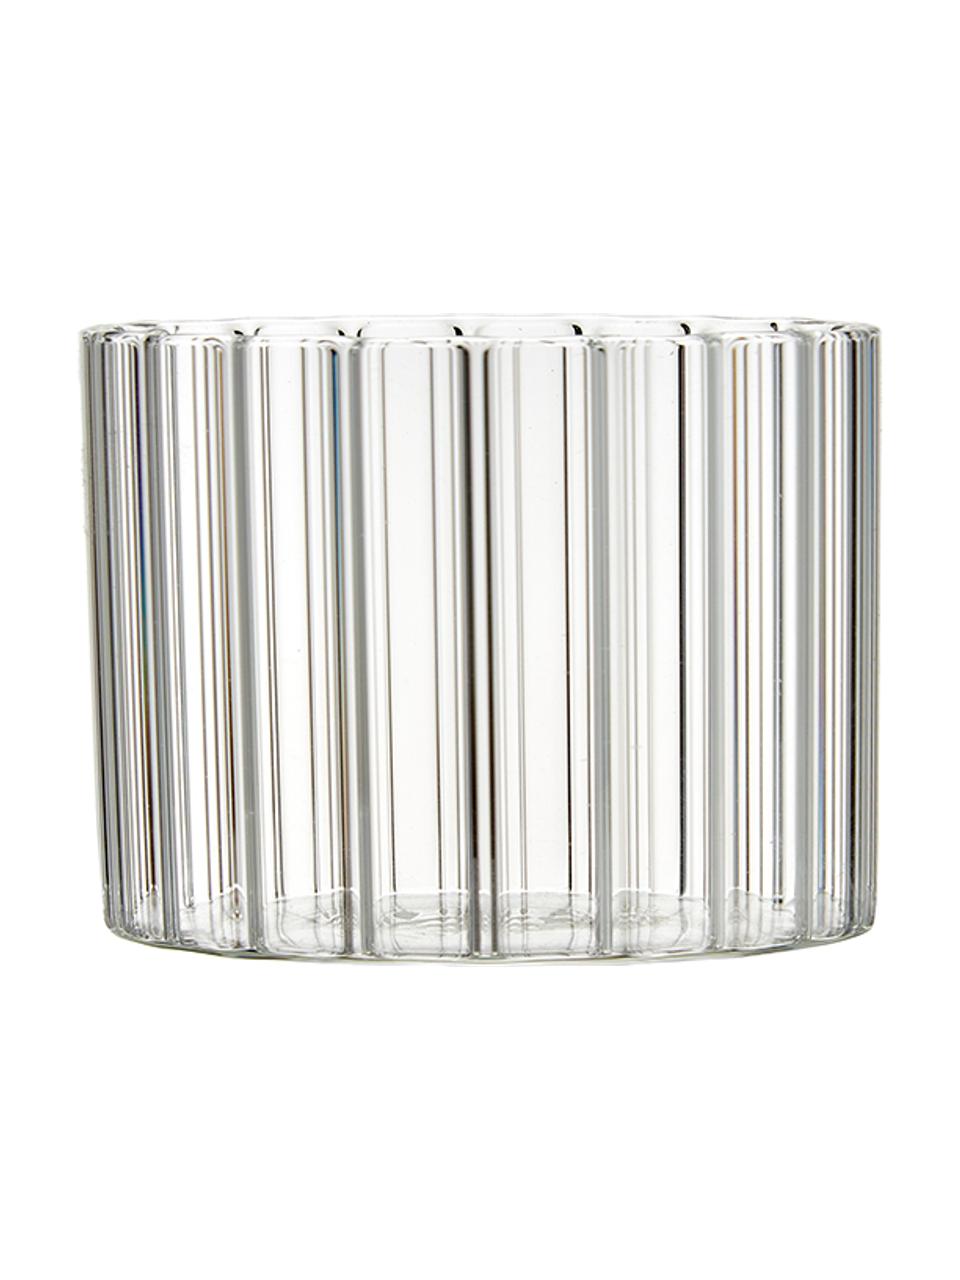 Bicchiere acqua in vetro borosilicato con rilievo Romantic 6 pz, Vetro borosilicato, Trasparente, Ø 8 x Alt. 6 cm